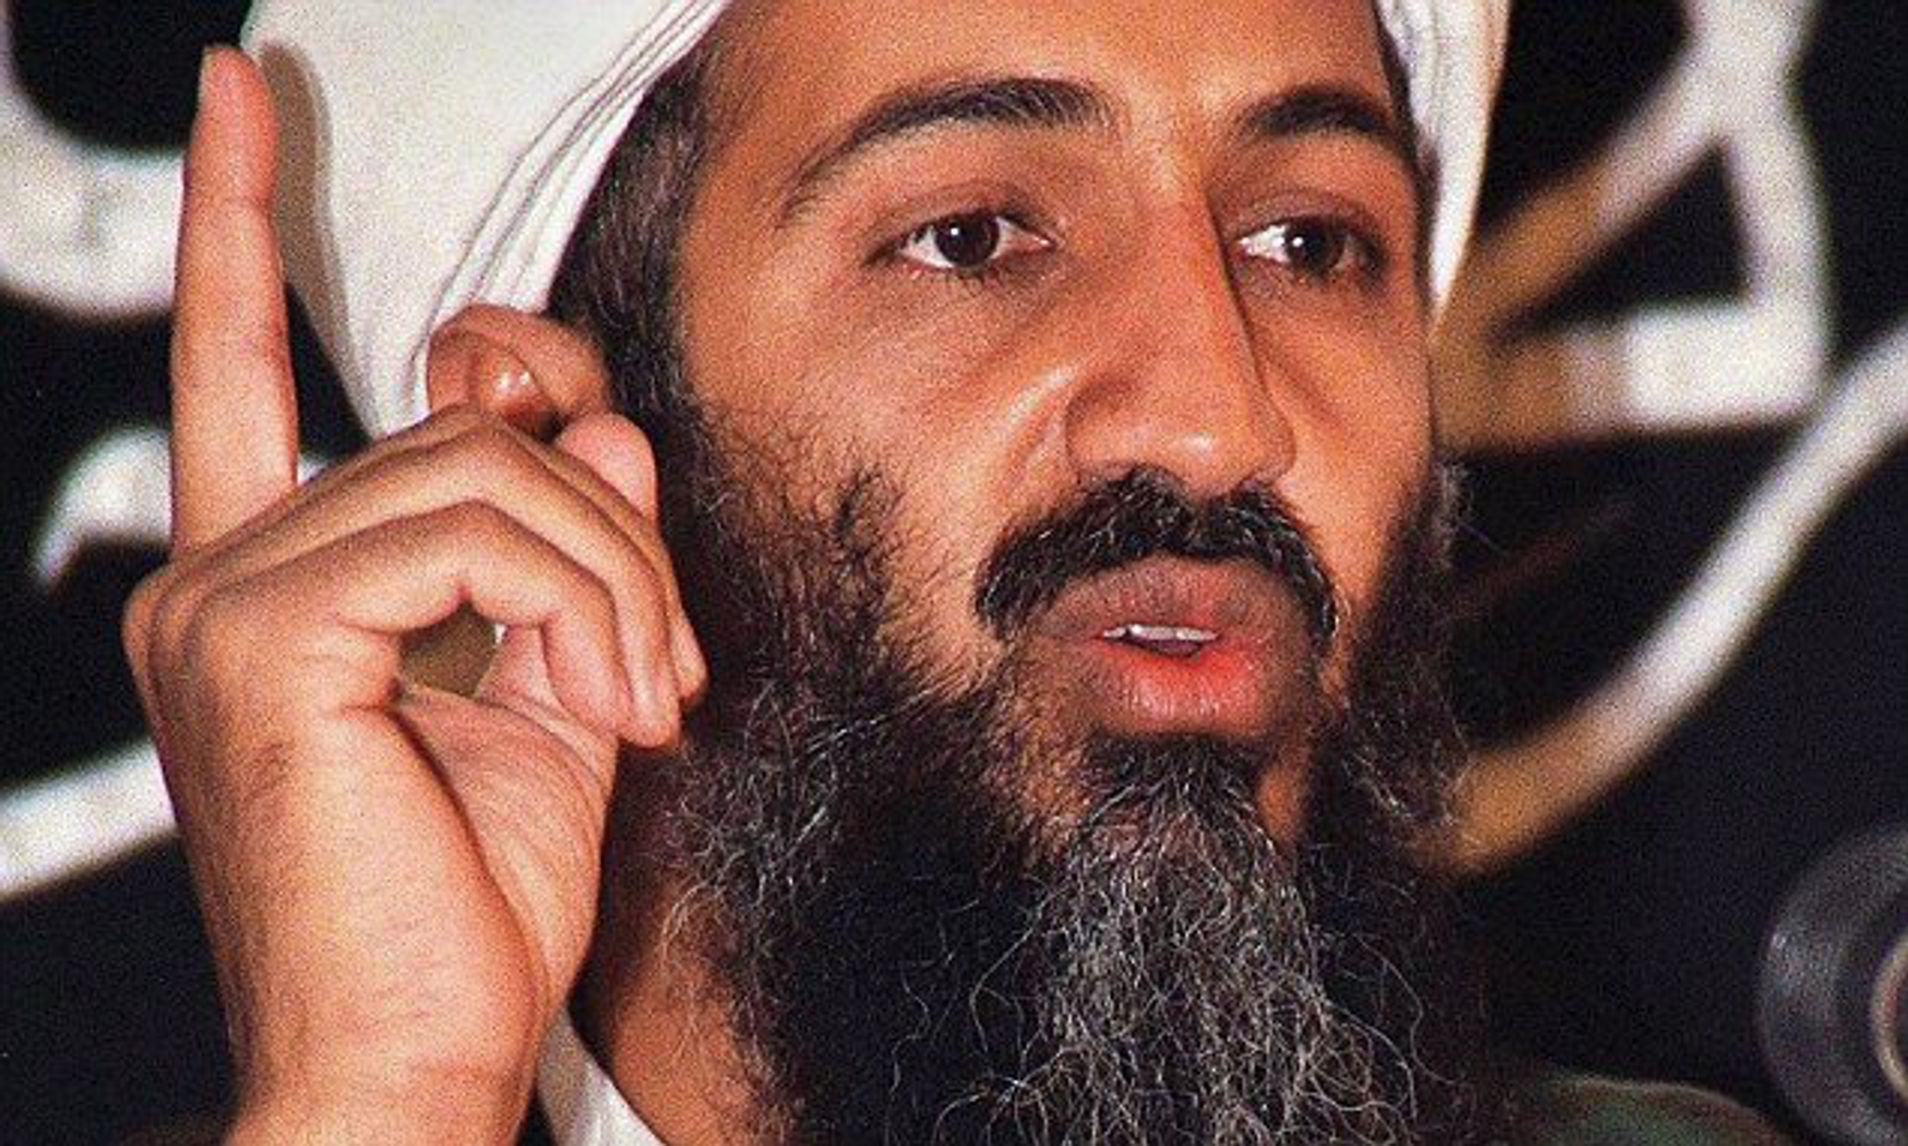 بعد مقتل بن لادن... الذكاء الصناعي يكشف تهديدات «القاعدة» المستقبلية -مكافحة الإرهاب